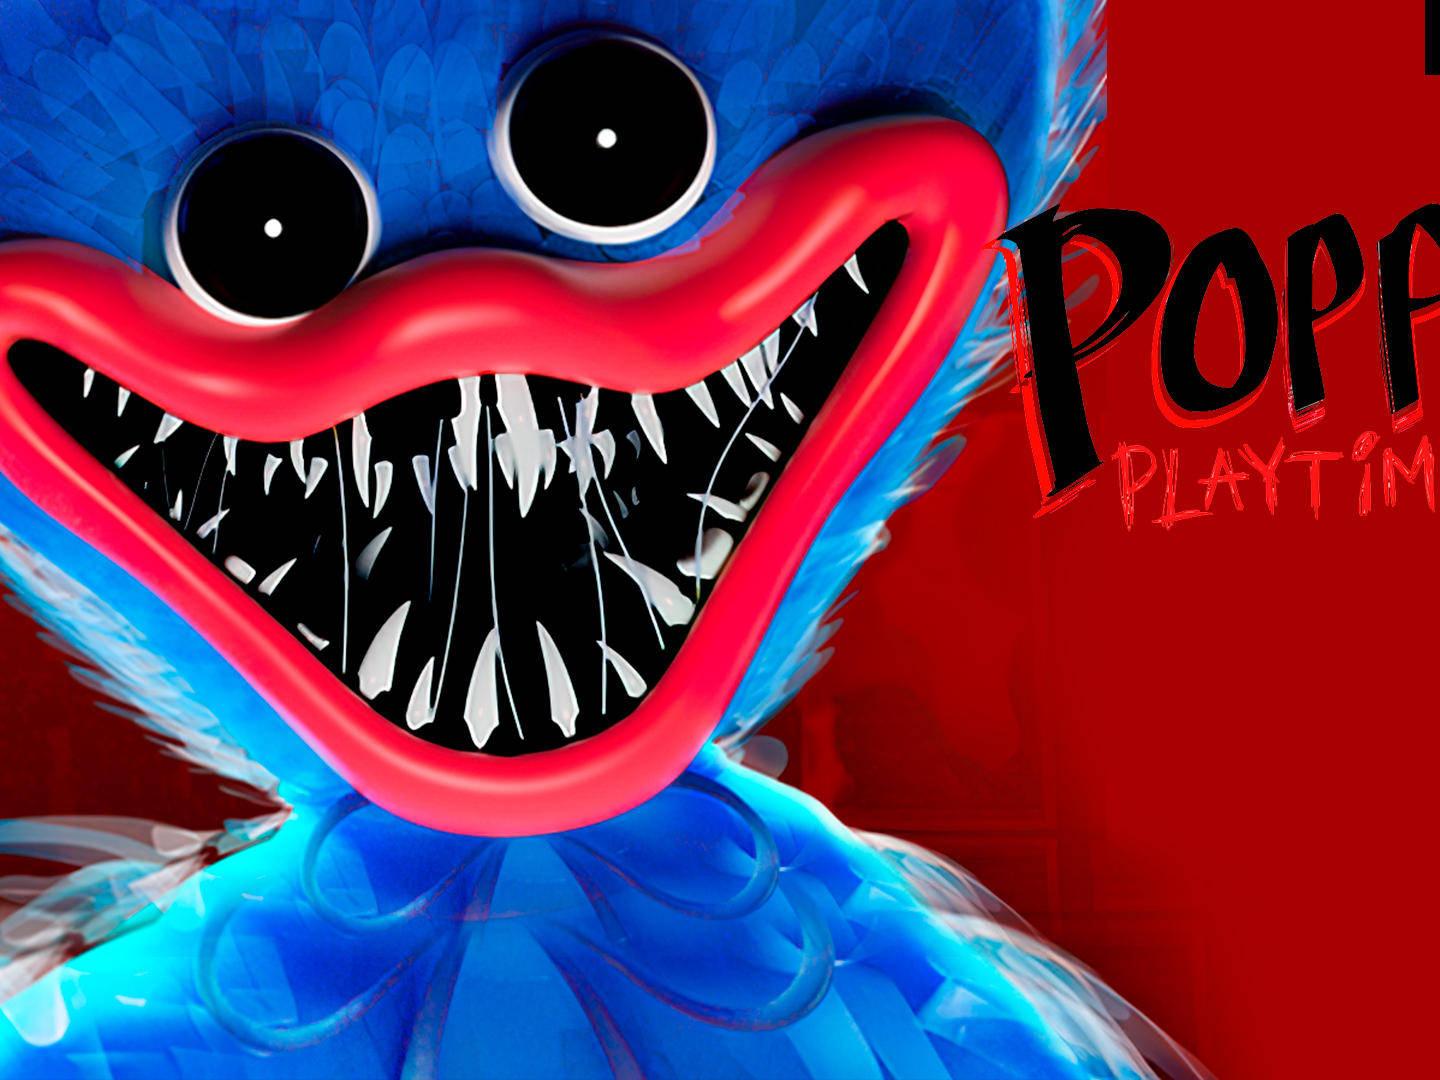 Poppy Playtime Capítulo 3 fecha de lanzamiento especulación, avances e  historia - Guia Game